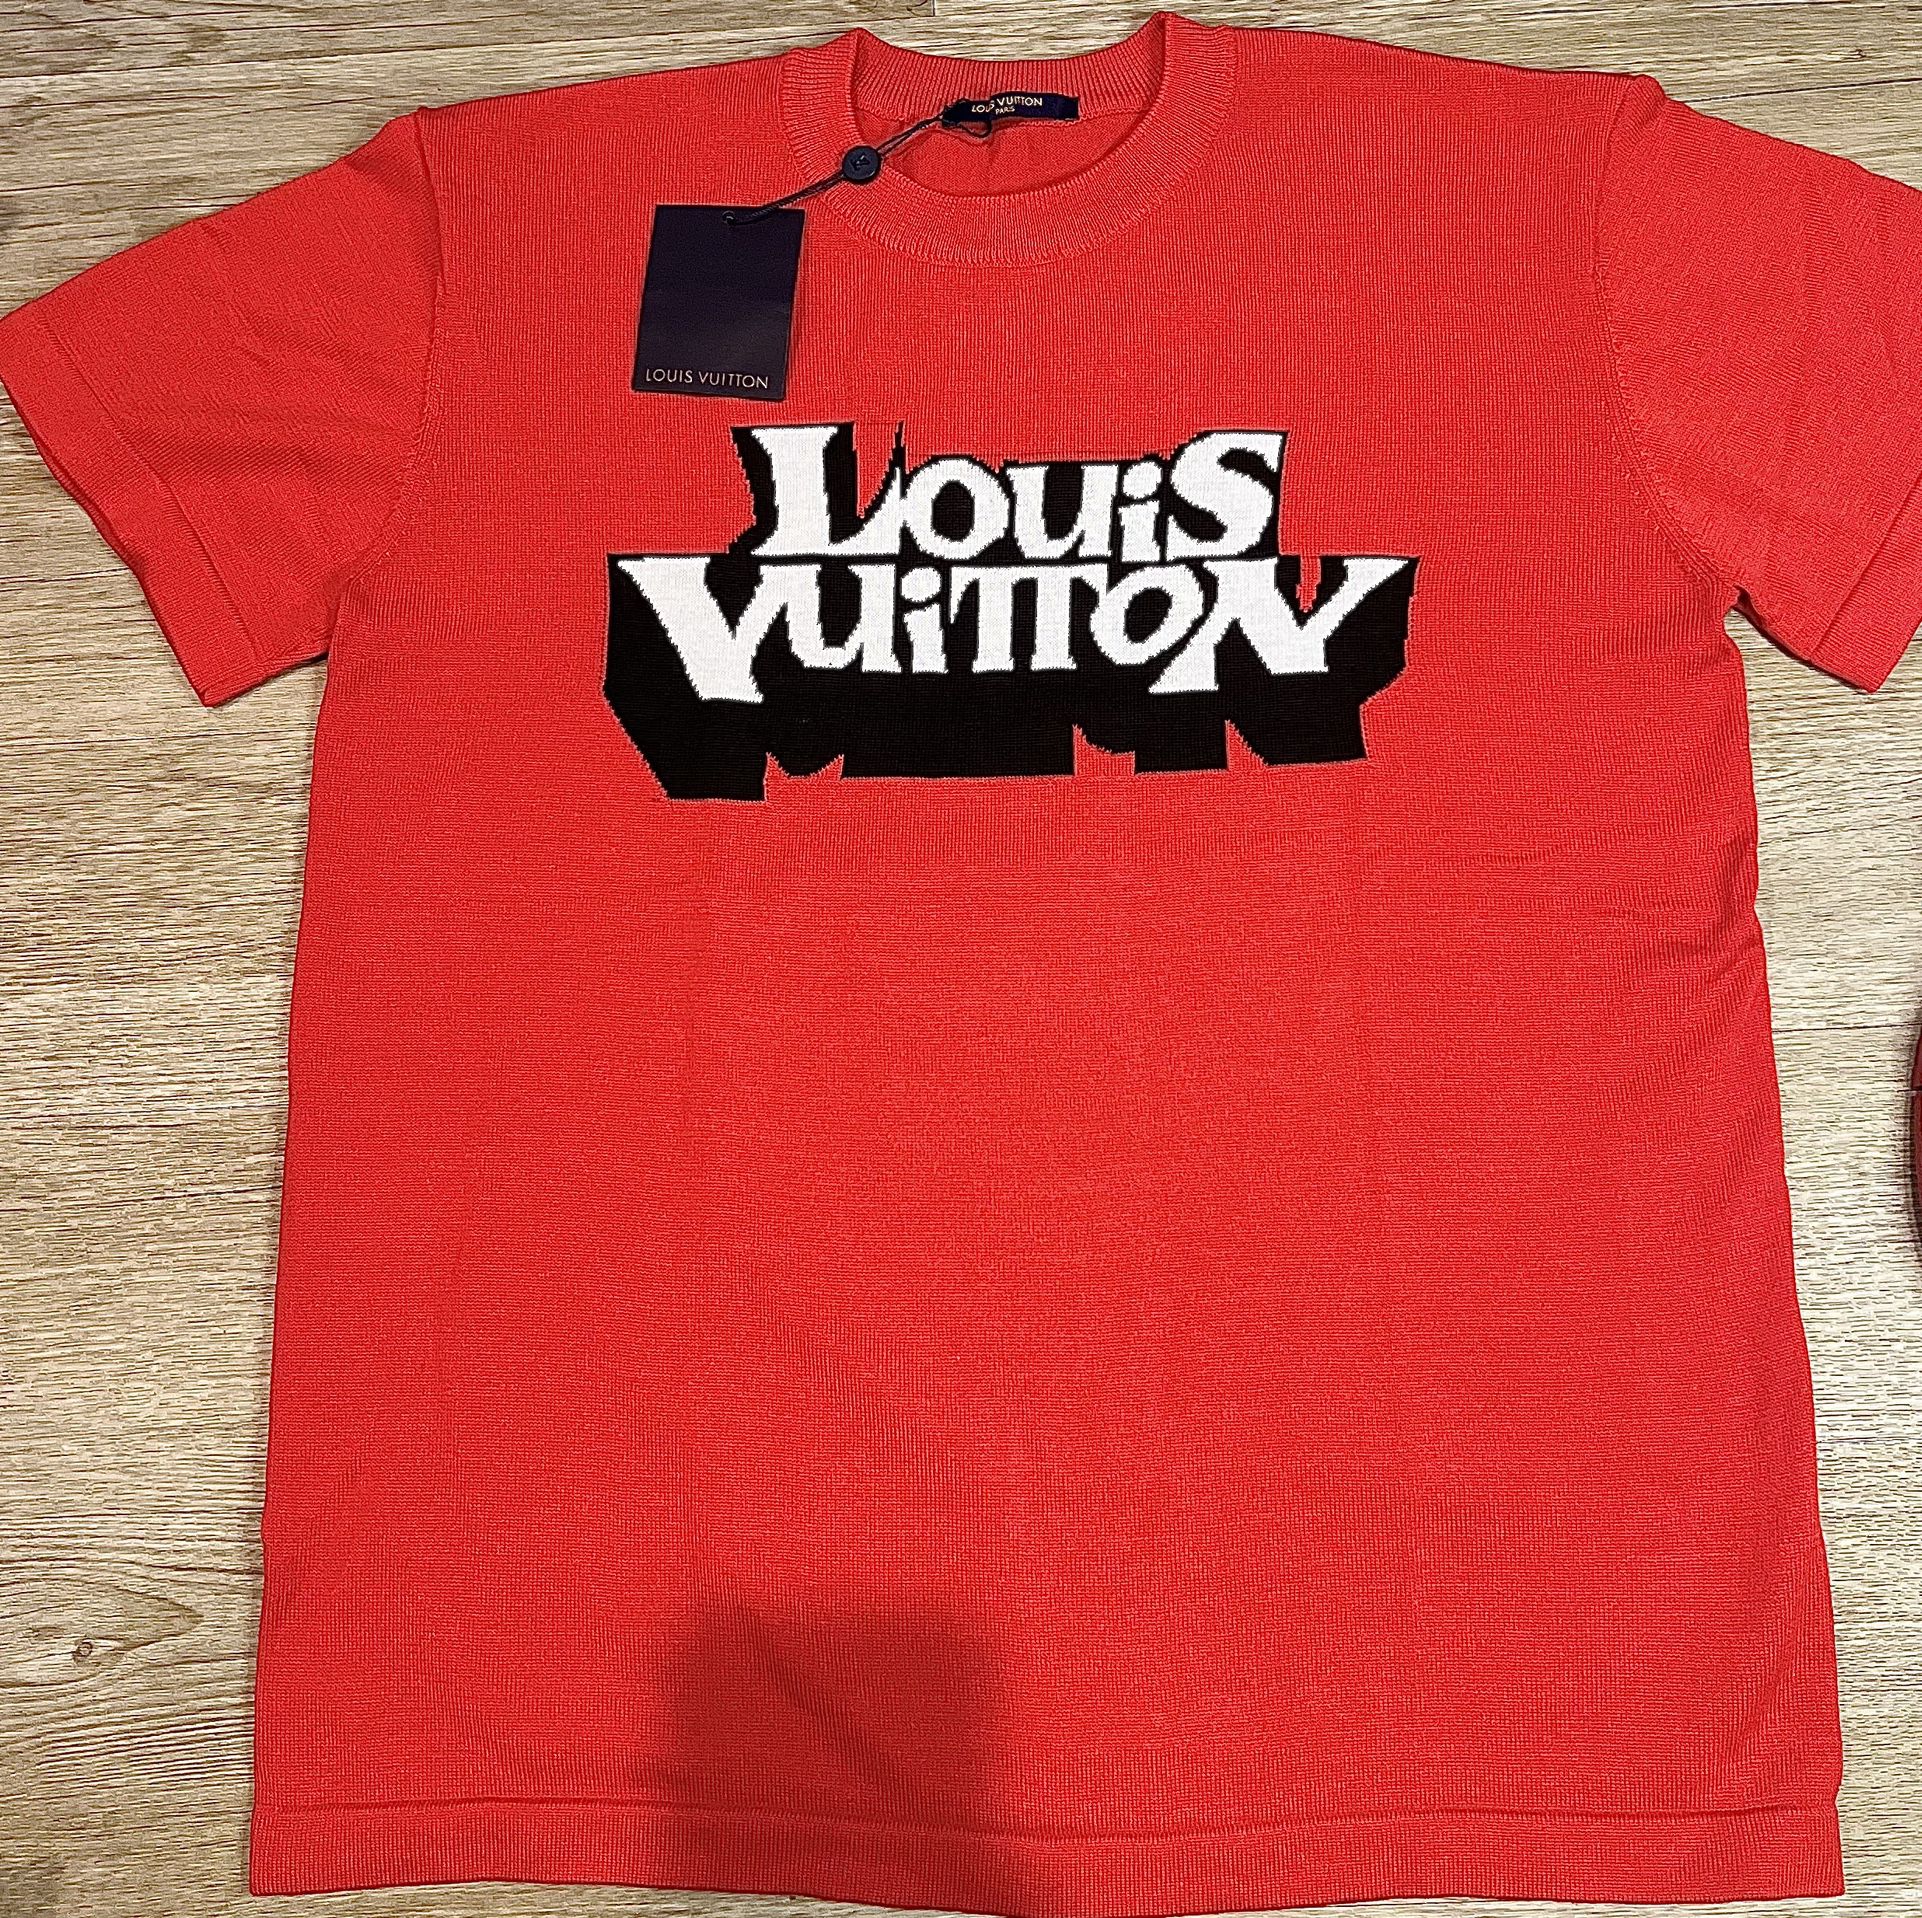 authentic Louis Vuitton tee shirt size L